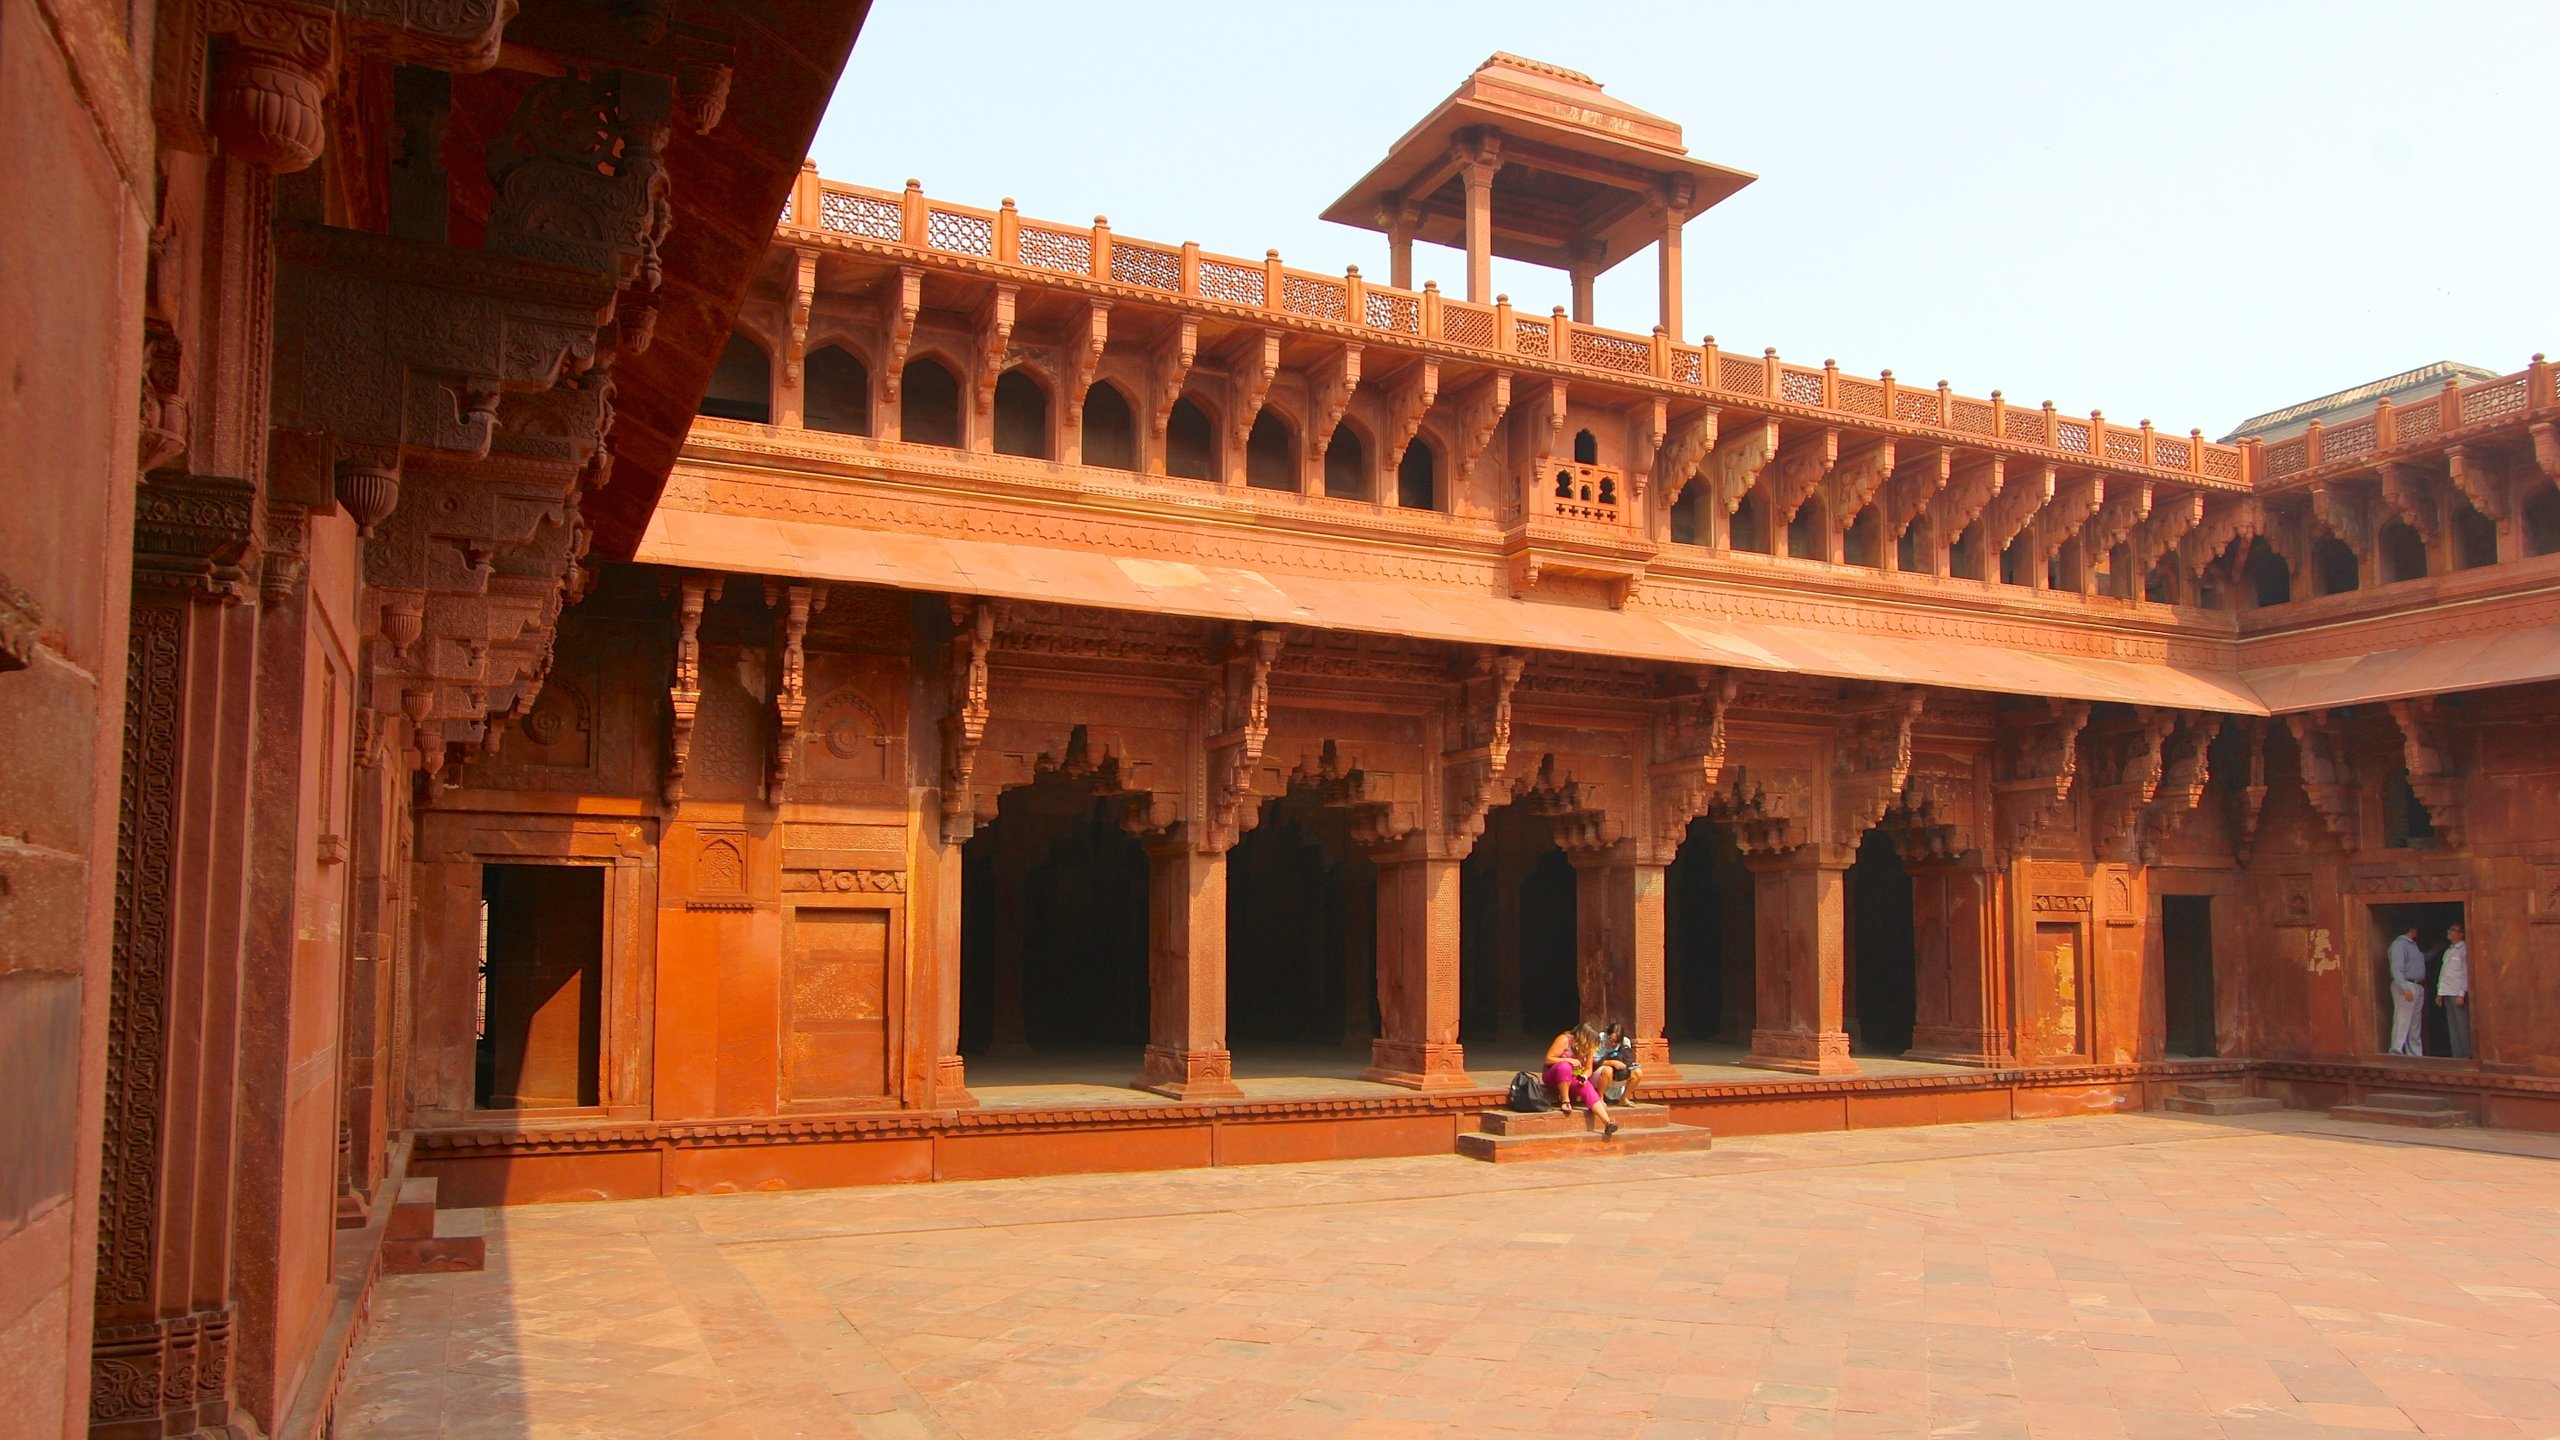 Agra Fort, Agra, Uttar Pradesh, IN